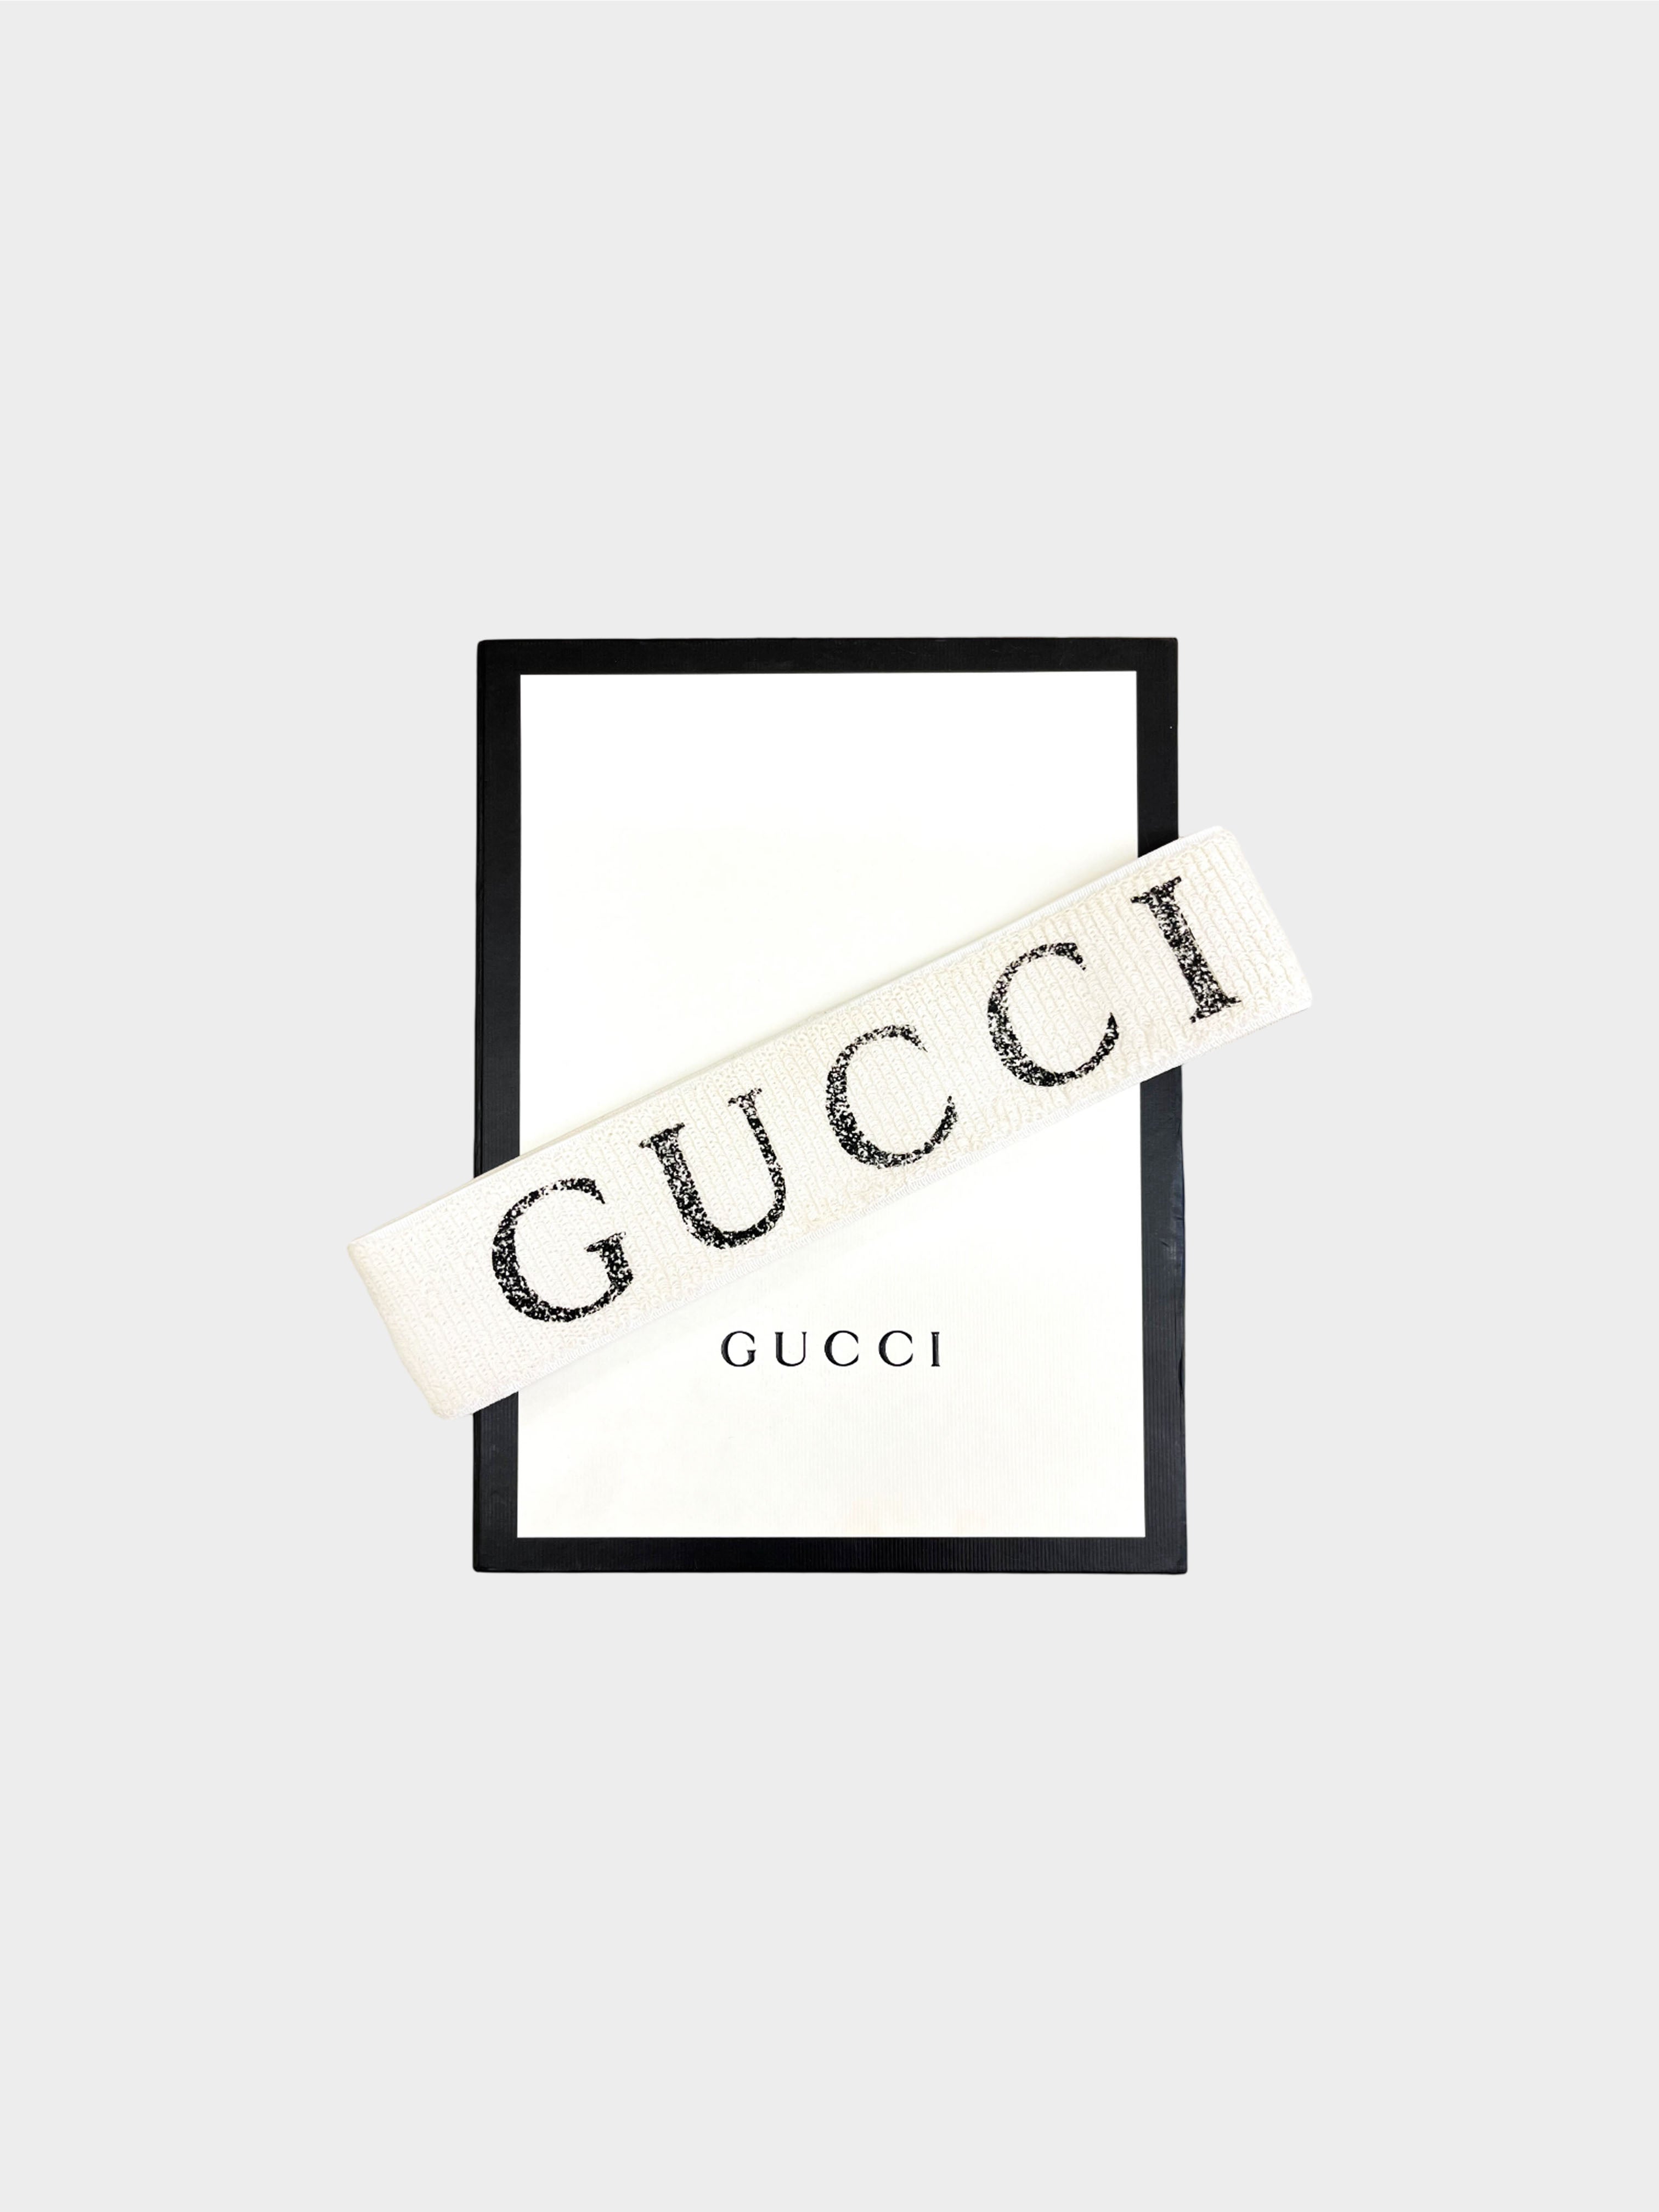 Gucci 2018 Cream and Black Cotton Sweatband